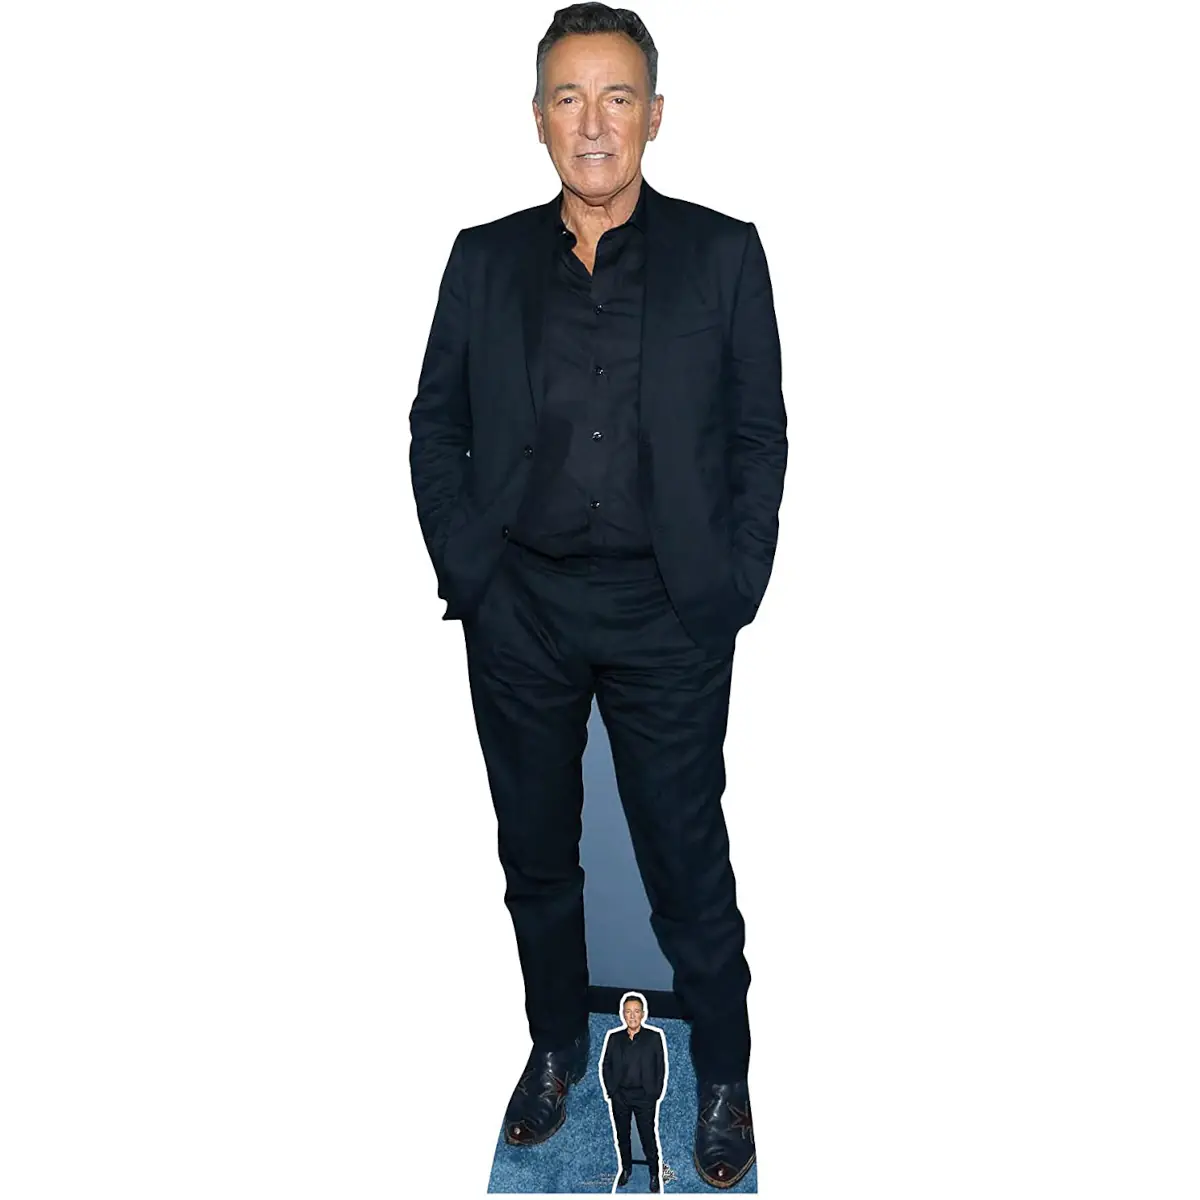 Bruce Springsteen (American Singer/Songwriter) Lifesize + Mini ...